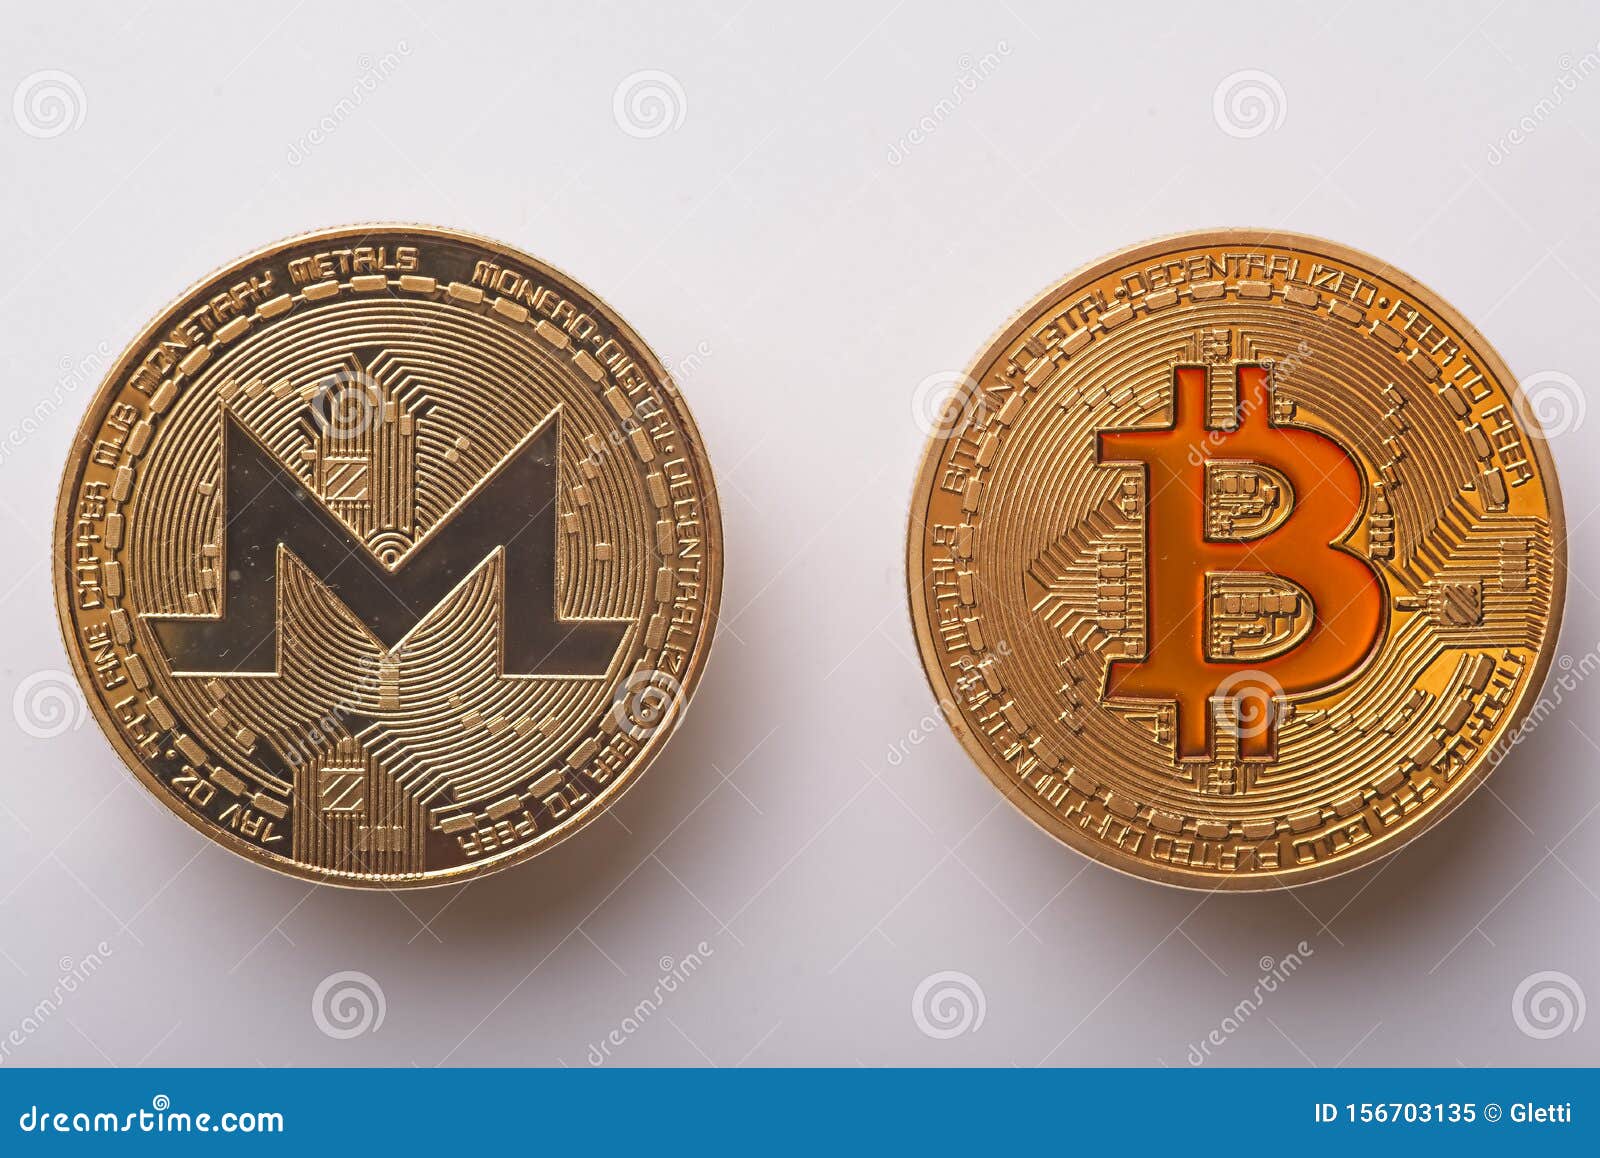 BTC to XMR Swap: Exchange Bitcoin (BTC) to Monero (XMR)